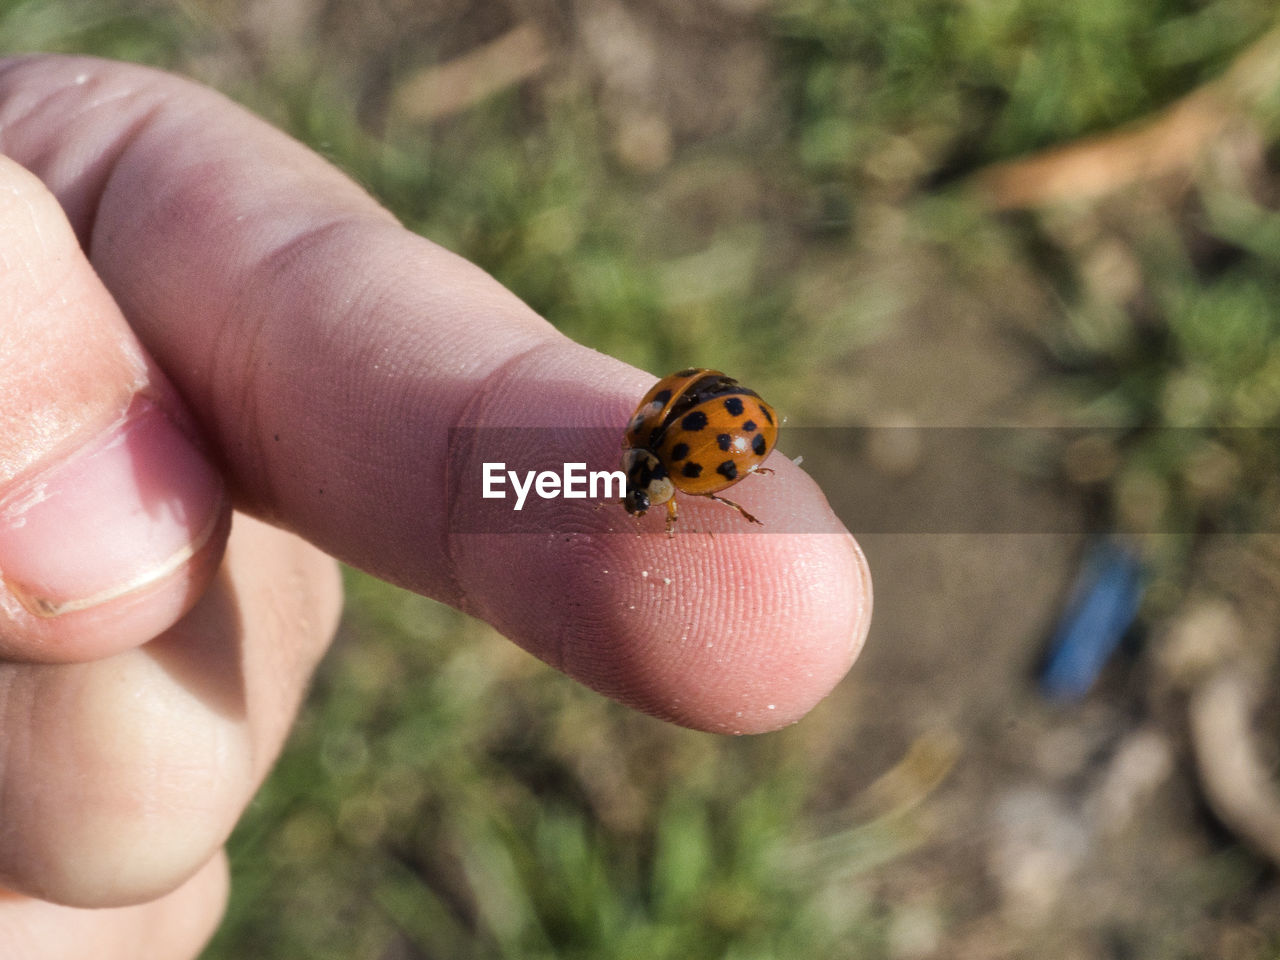 Ladybug crawling on finger